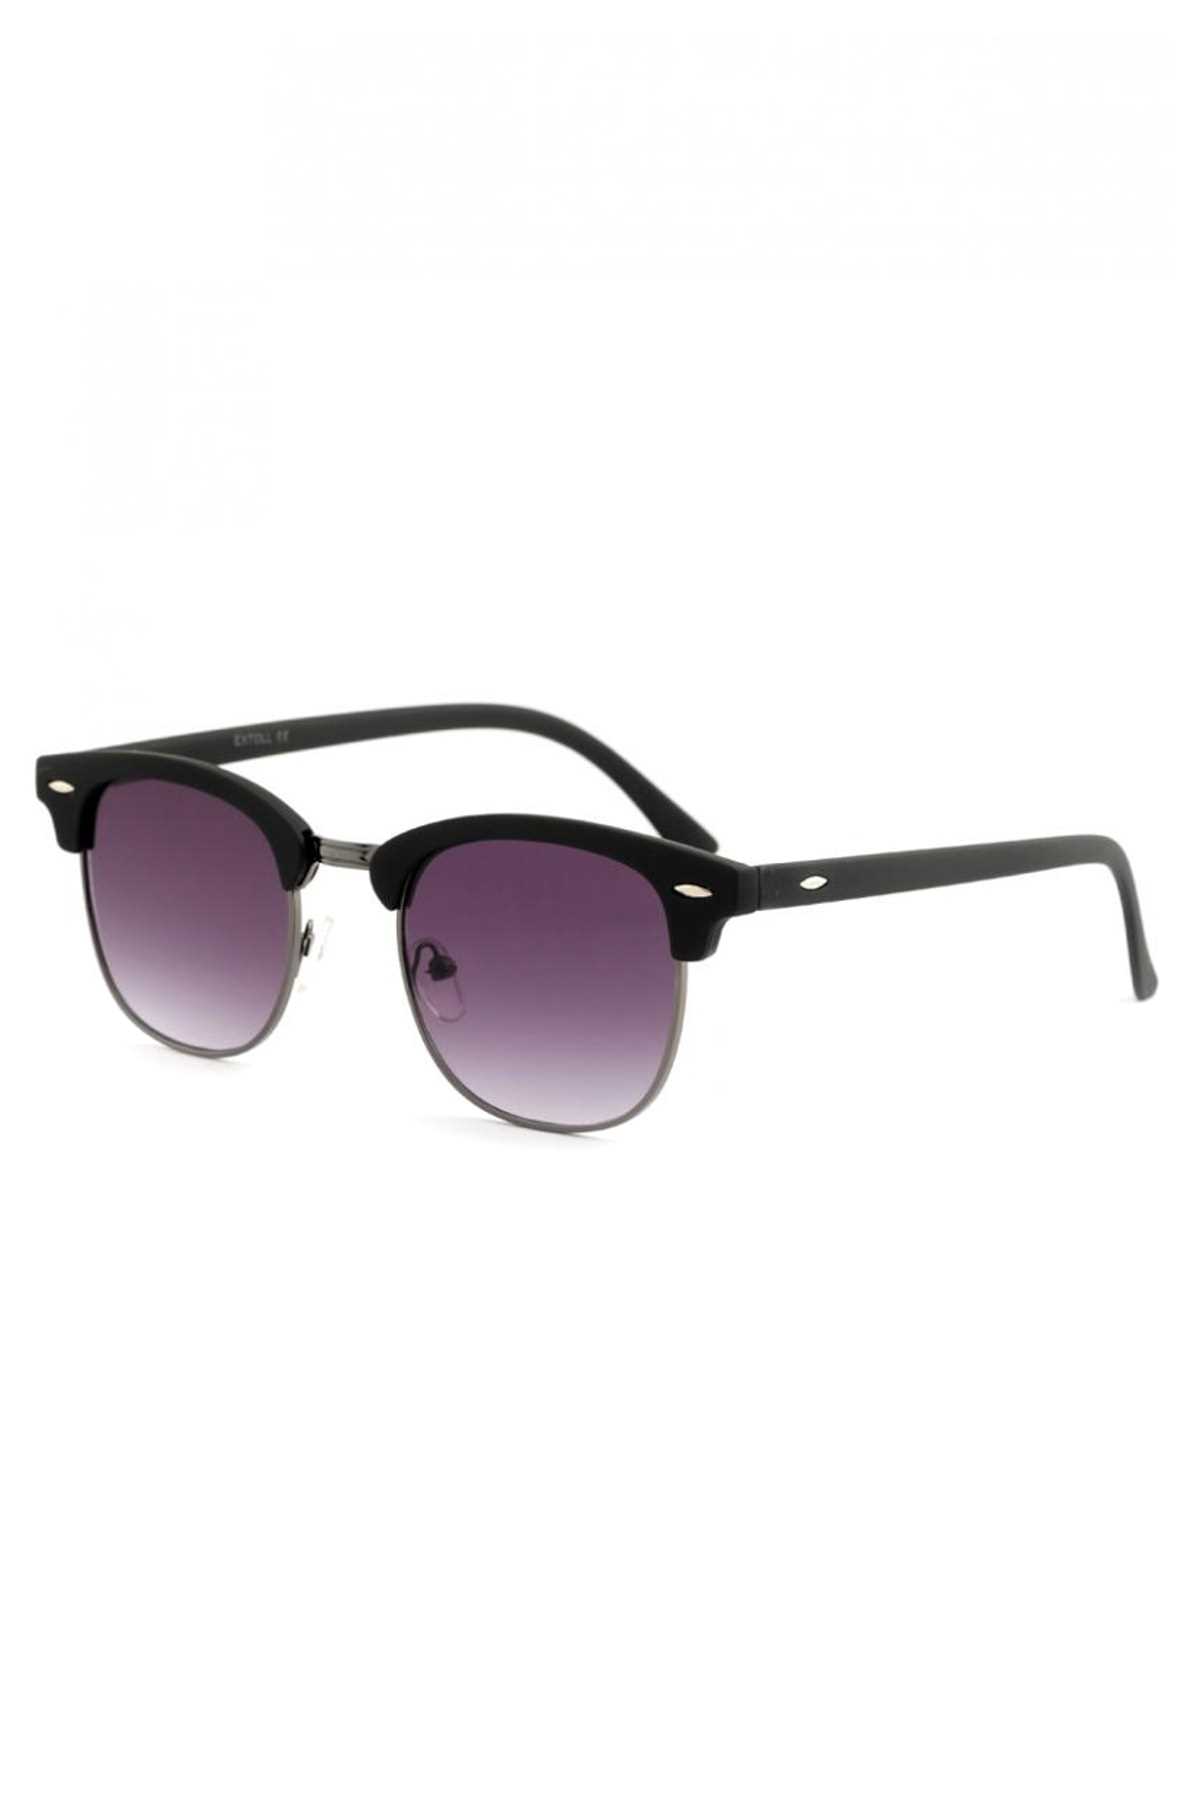 خرید انلاین عینک آفتابی زنانه خاص برند Polo U.K. رنگ مشکی کد ty35290647